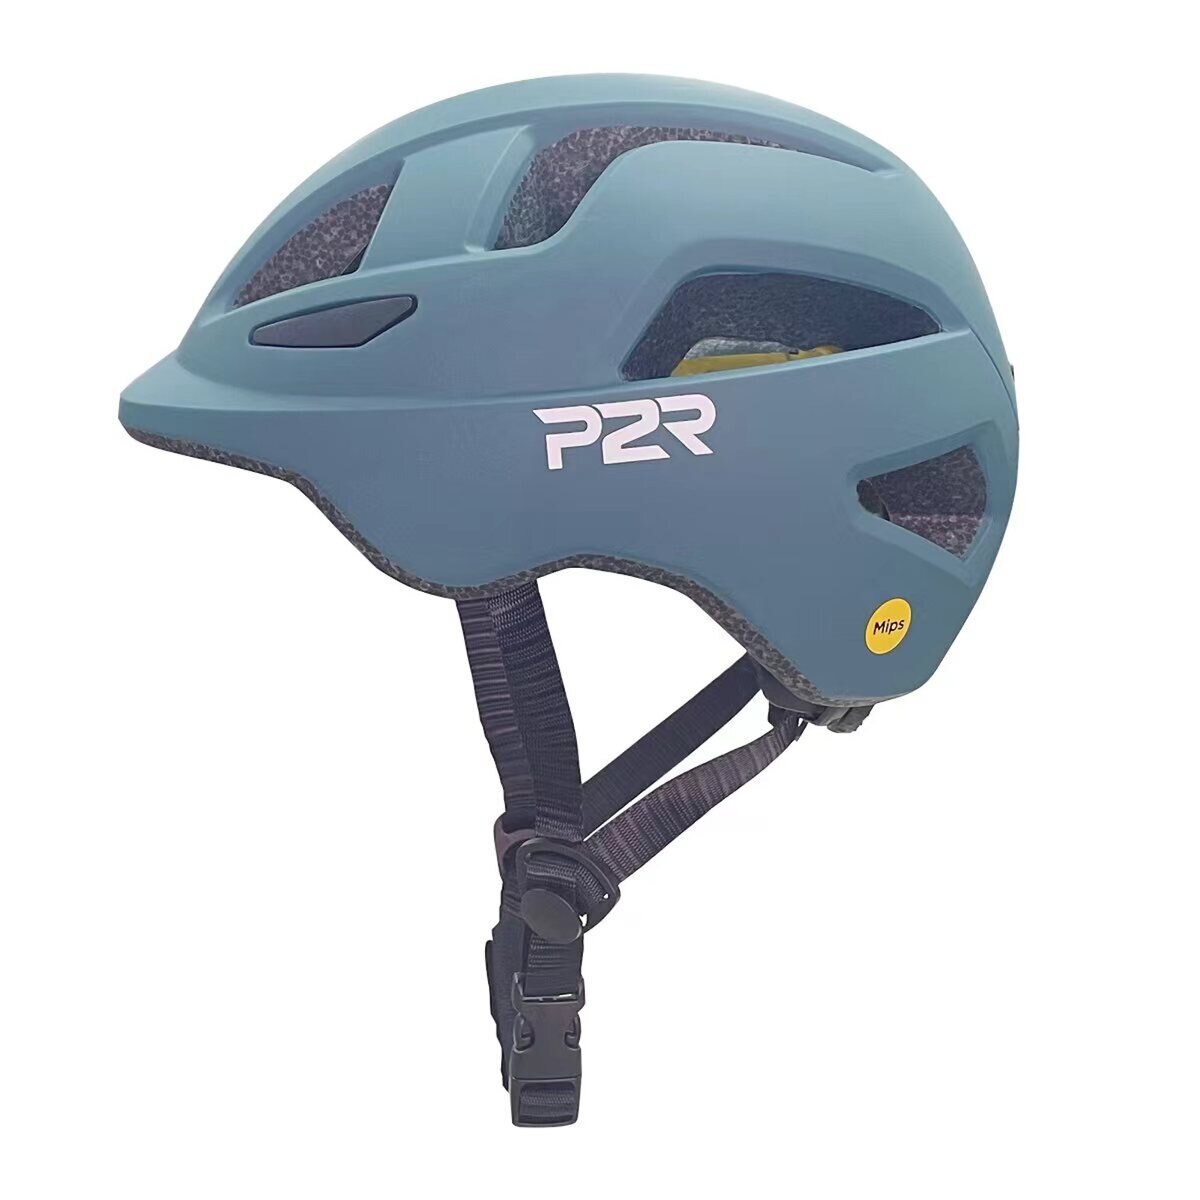 P2R MIPS搭載 自転車用インモールドヘルメット 子供用 オーシャンブルー